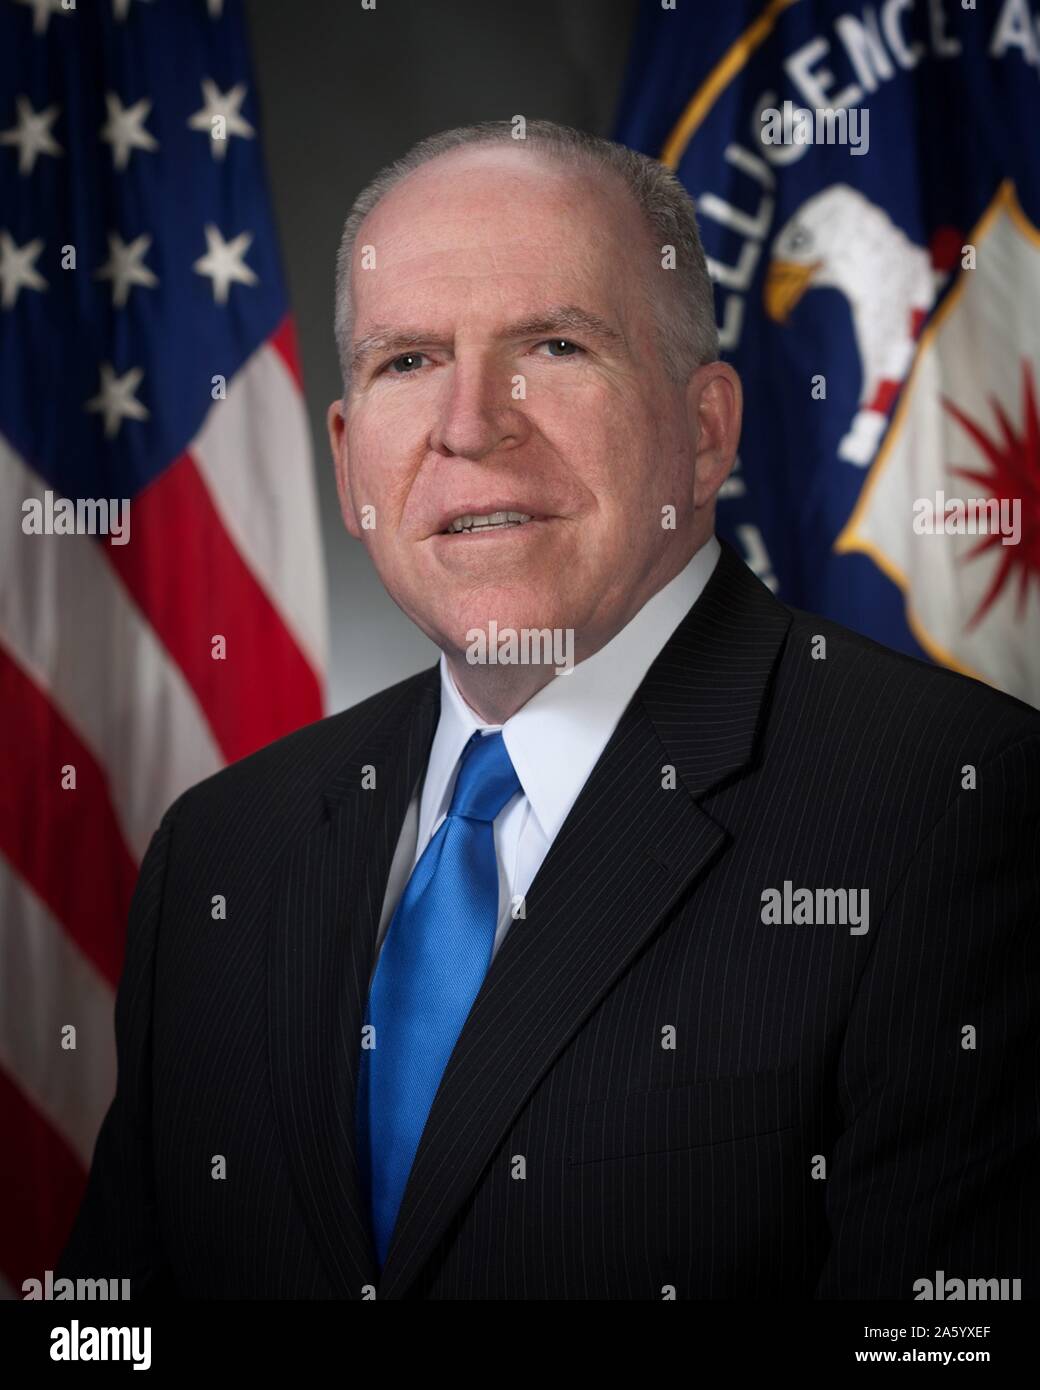 Foto von John O. Brennan (1955-) ein US-amerikanischer Regierungsbeamter und Direktor der Central Intelligence Agency. Datierte 2013 Stockfoto